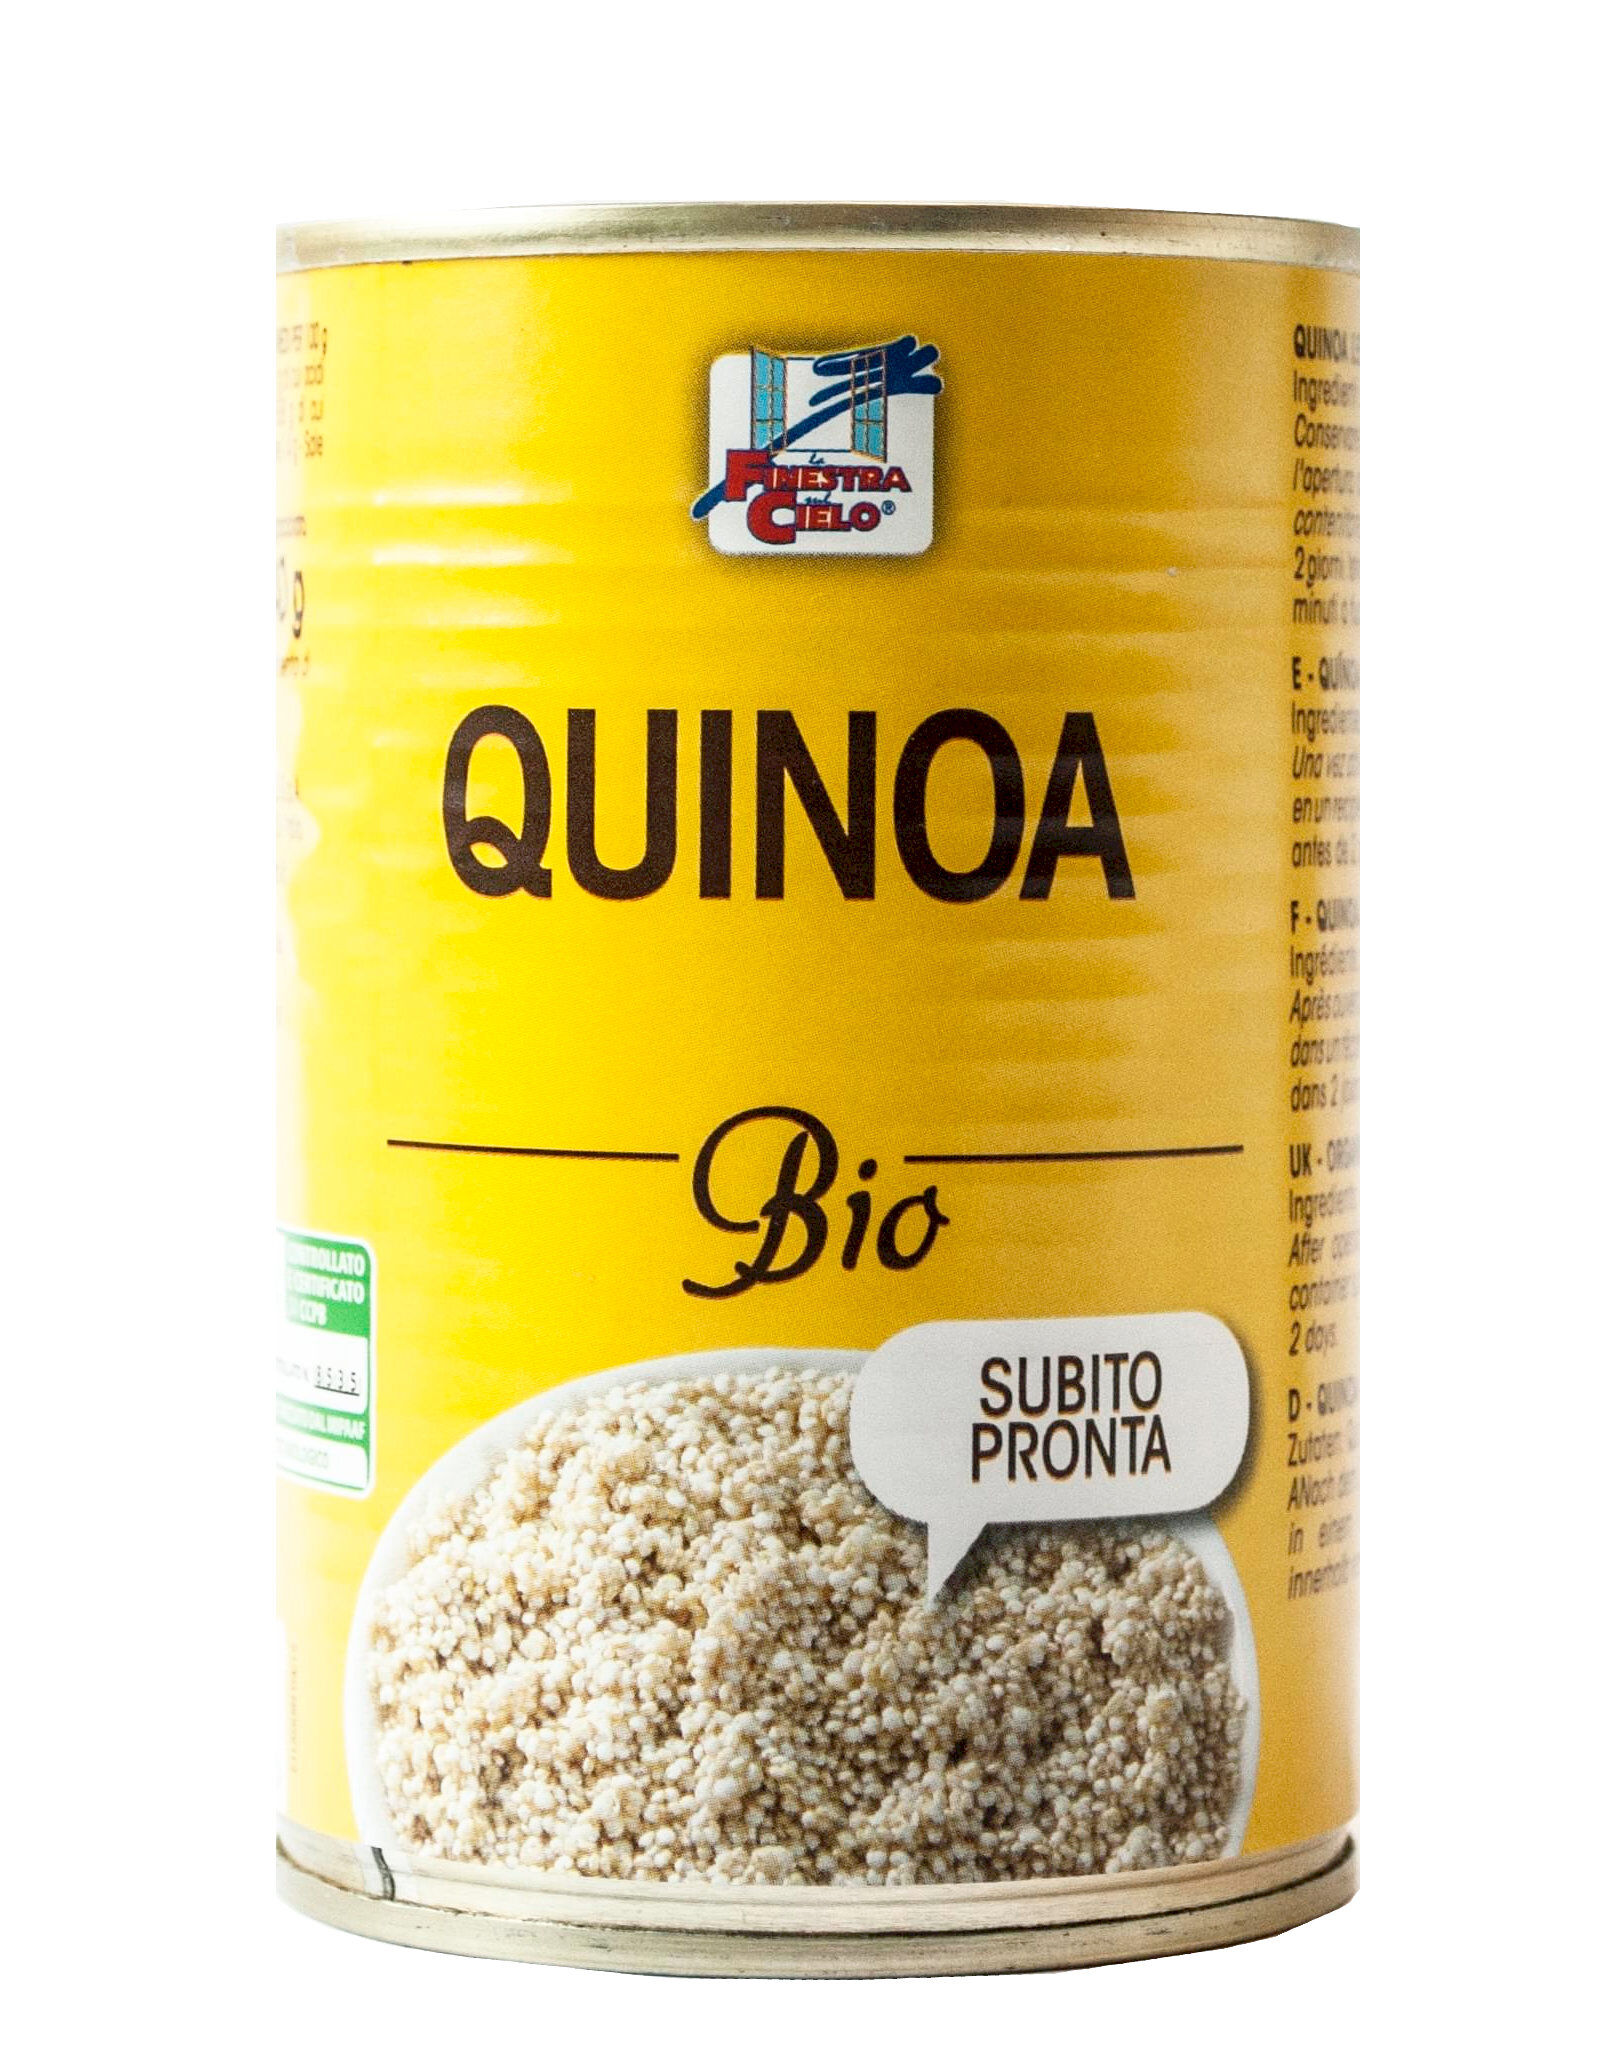 LA FINESTRA SUL CIELO Quinoa Bio 400 Grammi